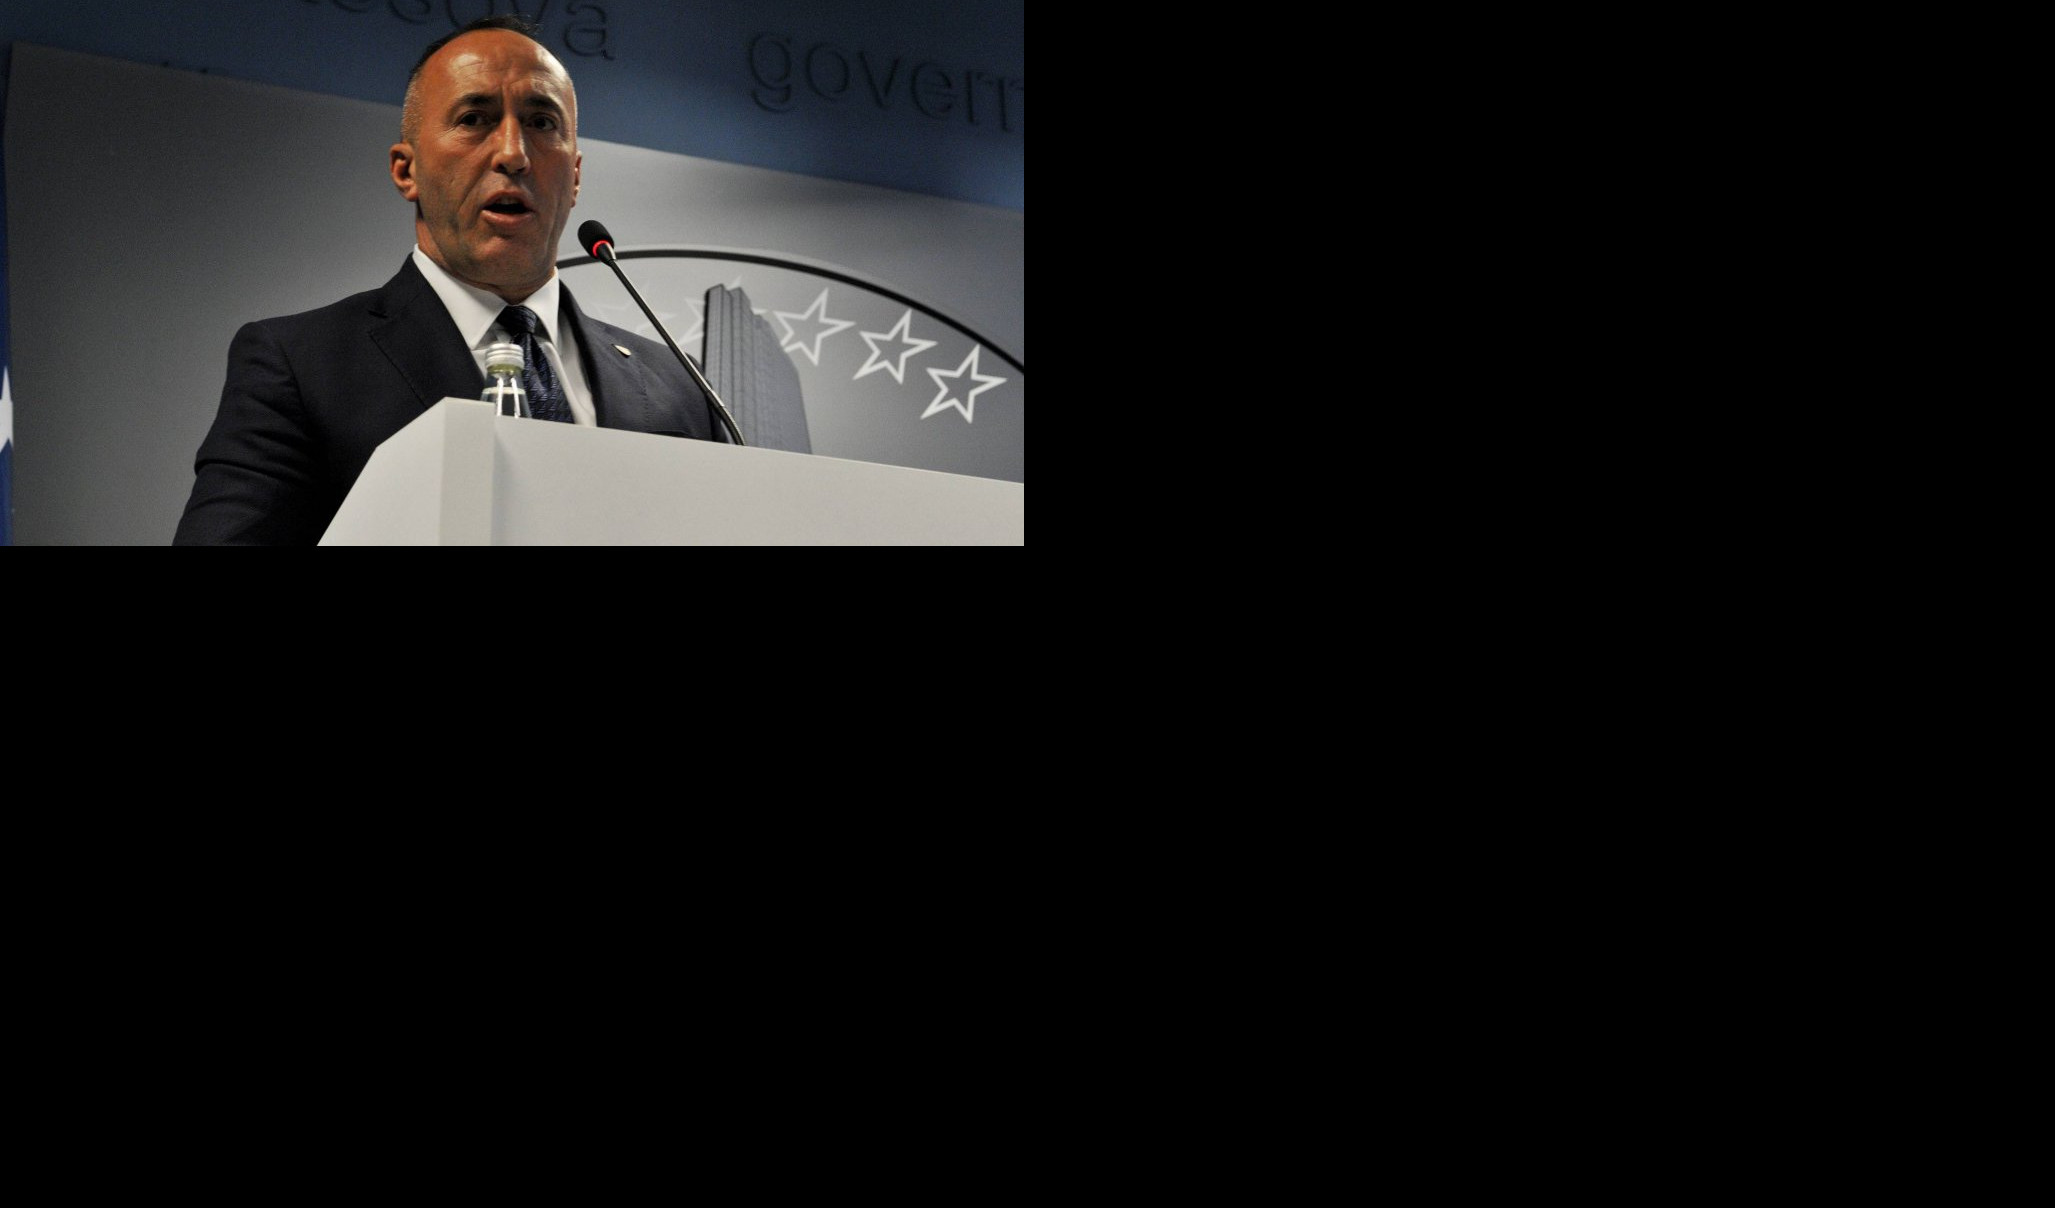 NEOČEKIVANI RASPLET U PRIŠTINI! Haradinaj "leti" iz Vlade lažne države sledeće nedelje?!